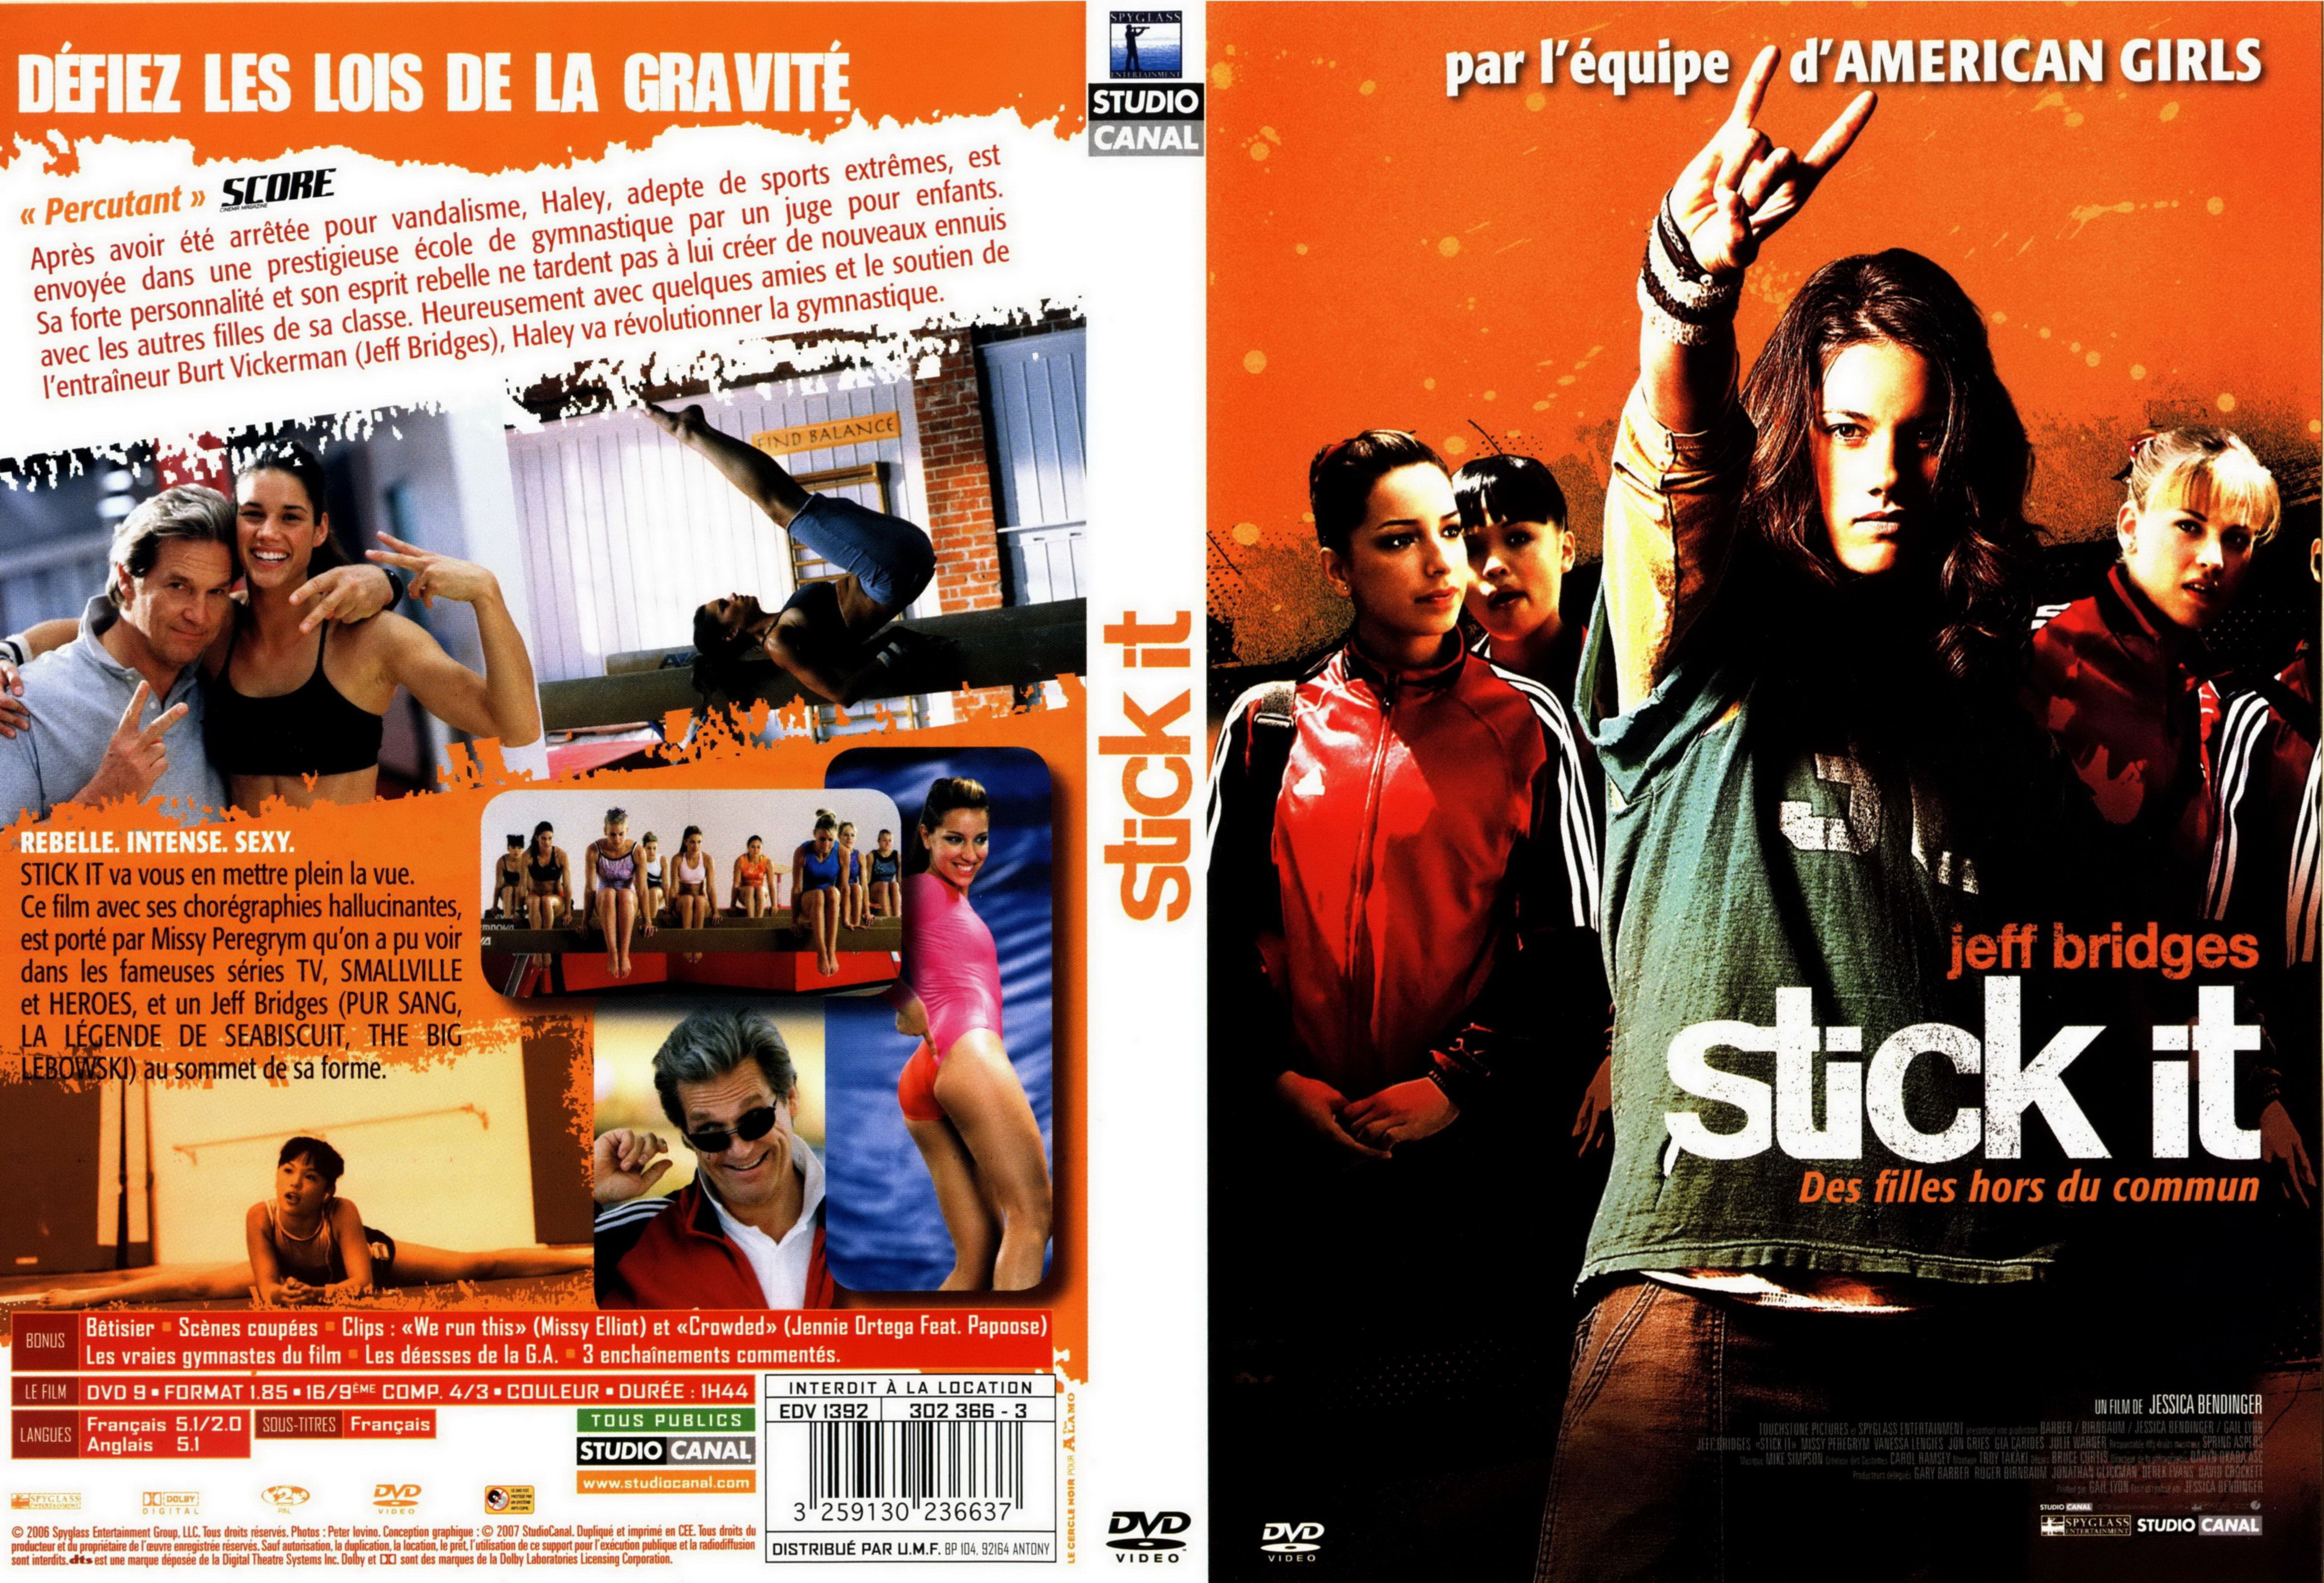 Jaquette DVD de Stick it des filles hors du commun - Cinéma Passion